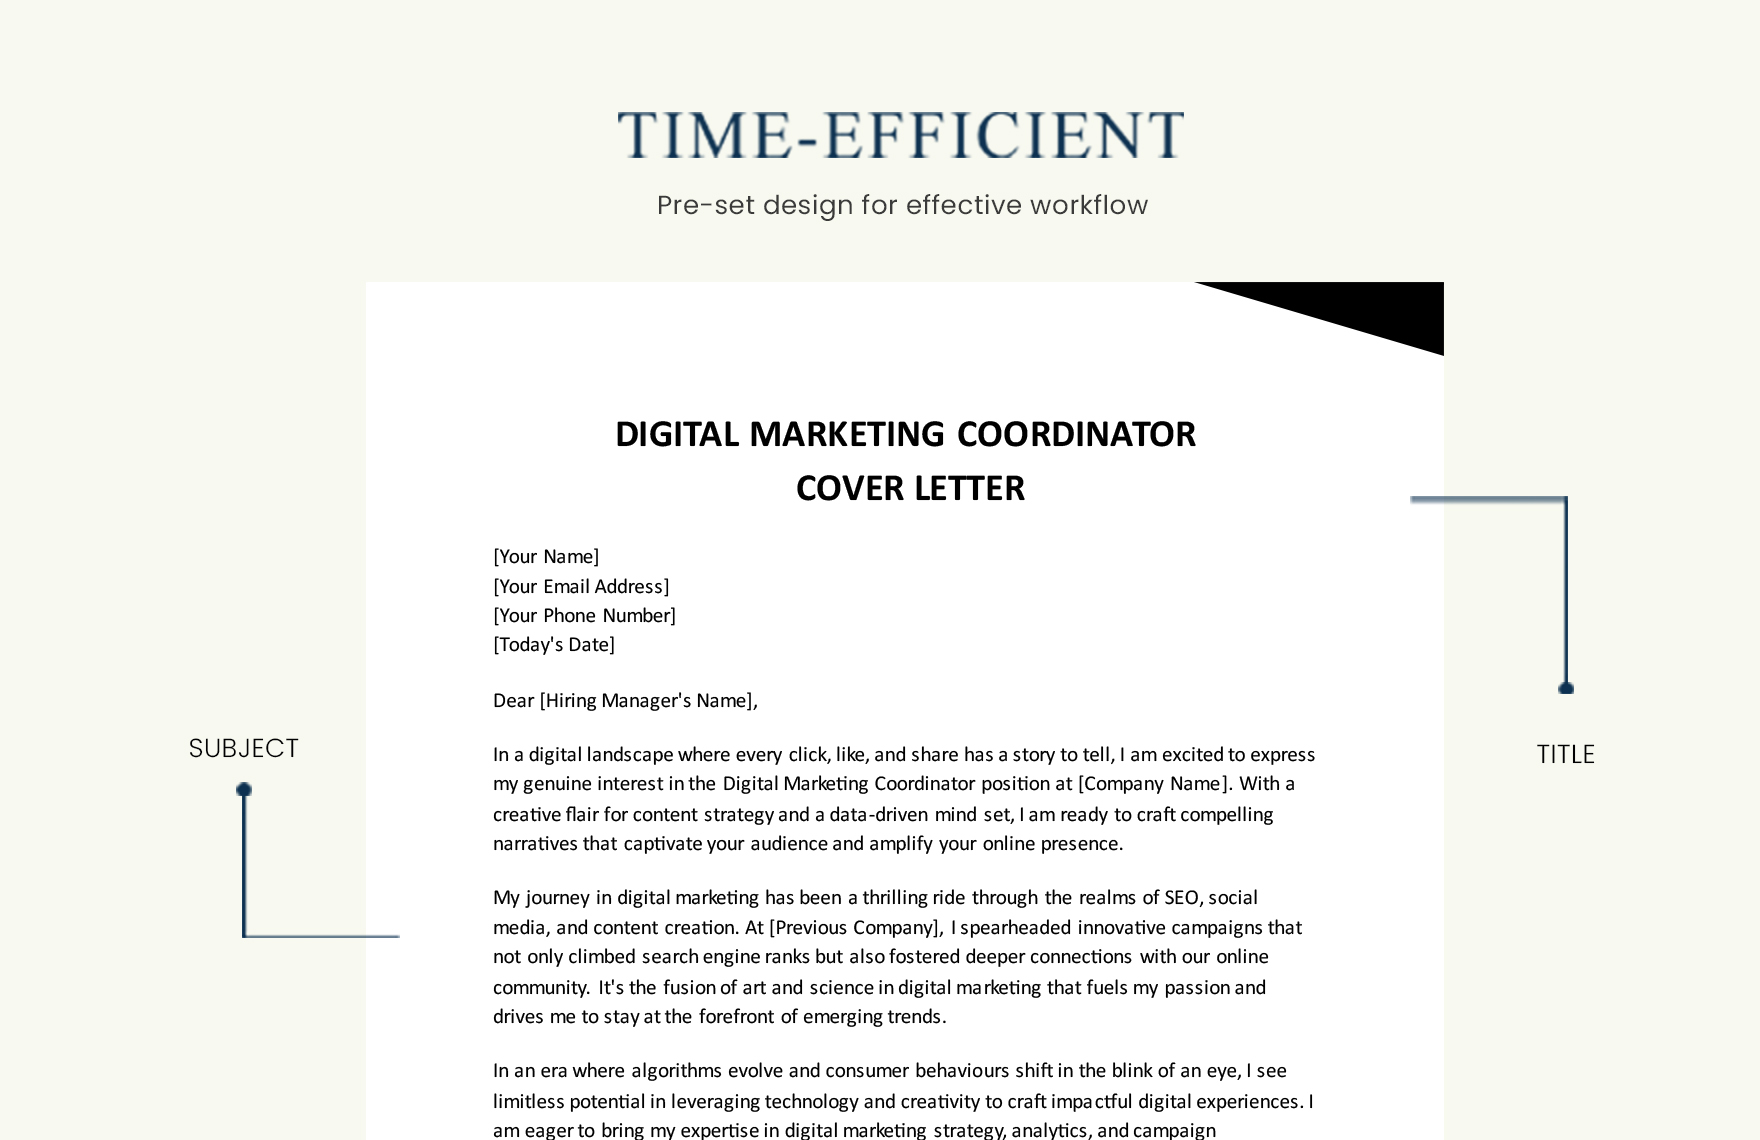 Digital Marketing Coordinator Cover Letter